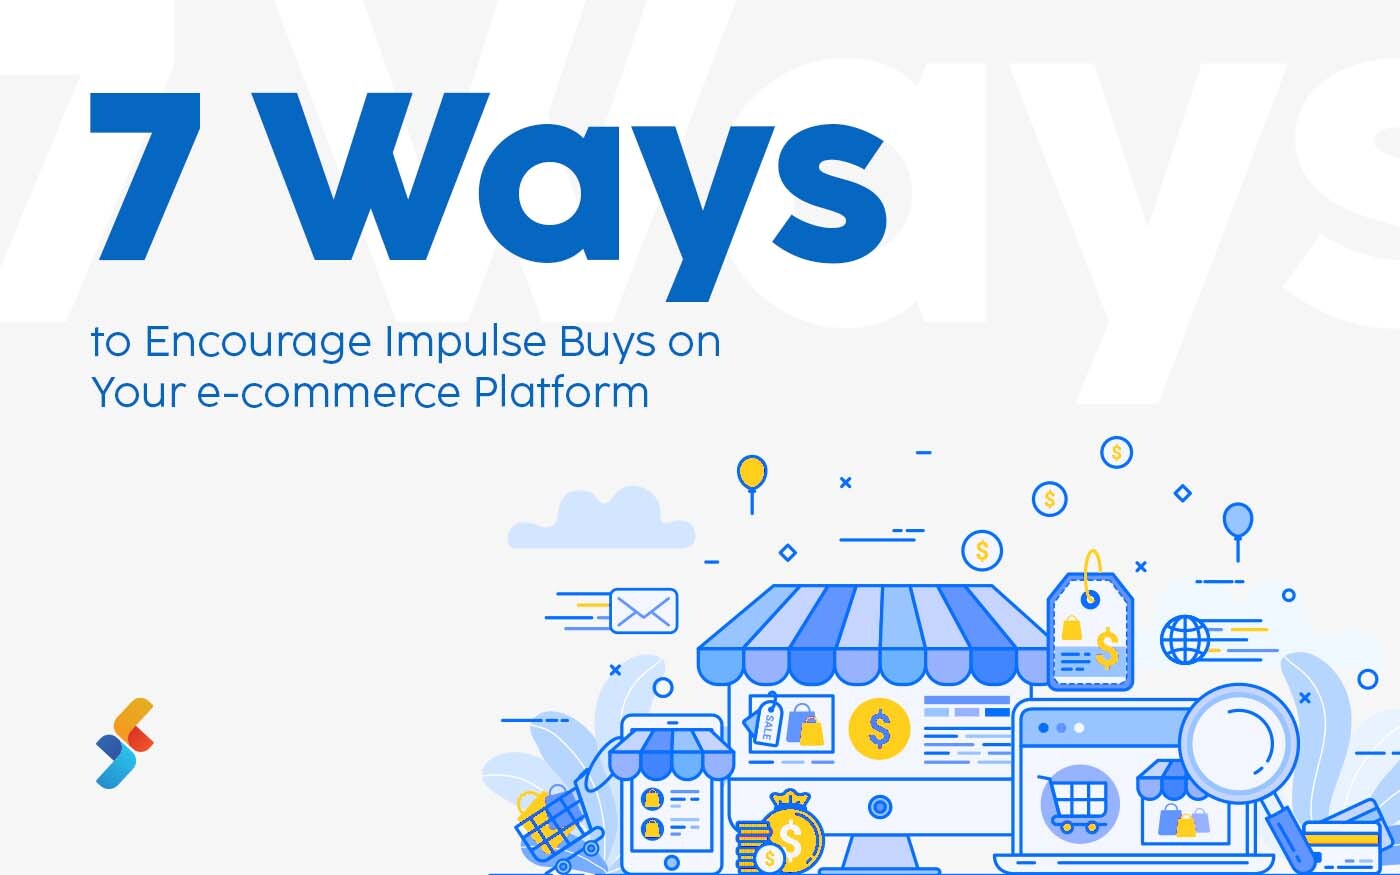 7 Ways to Encourage Impulse Buys on Your E-Commerce Platform